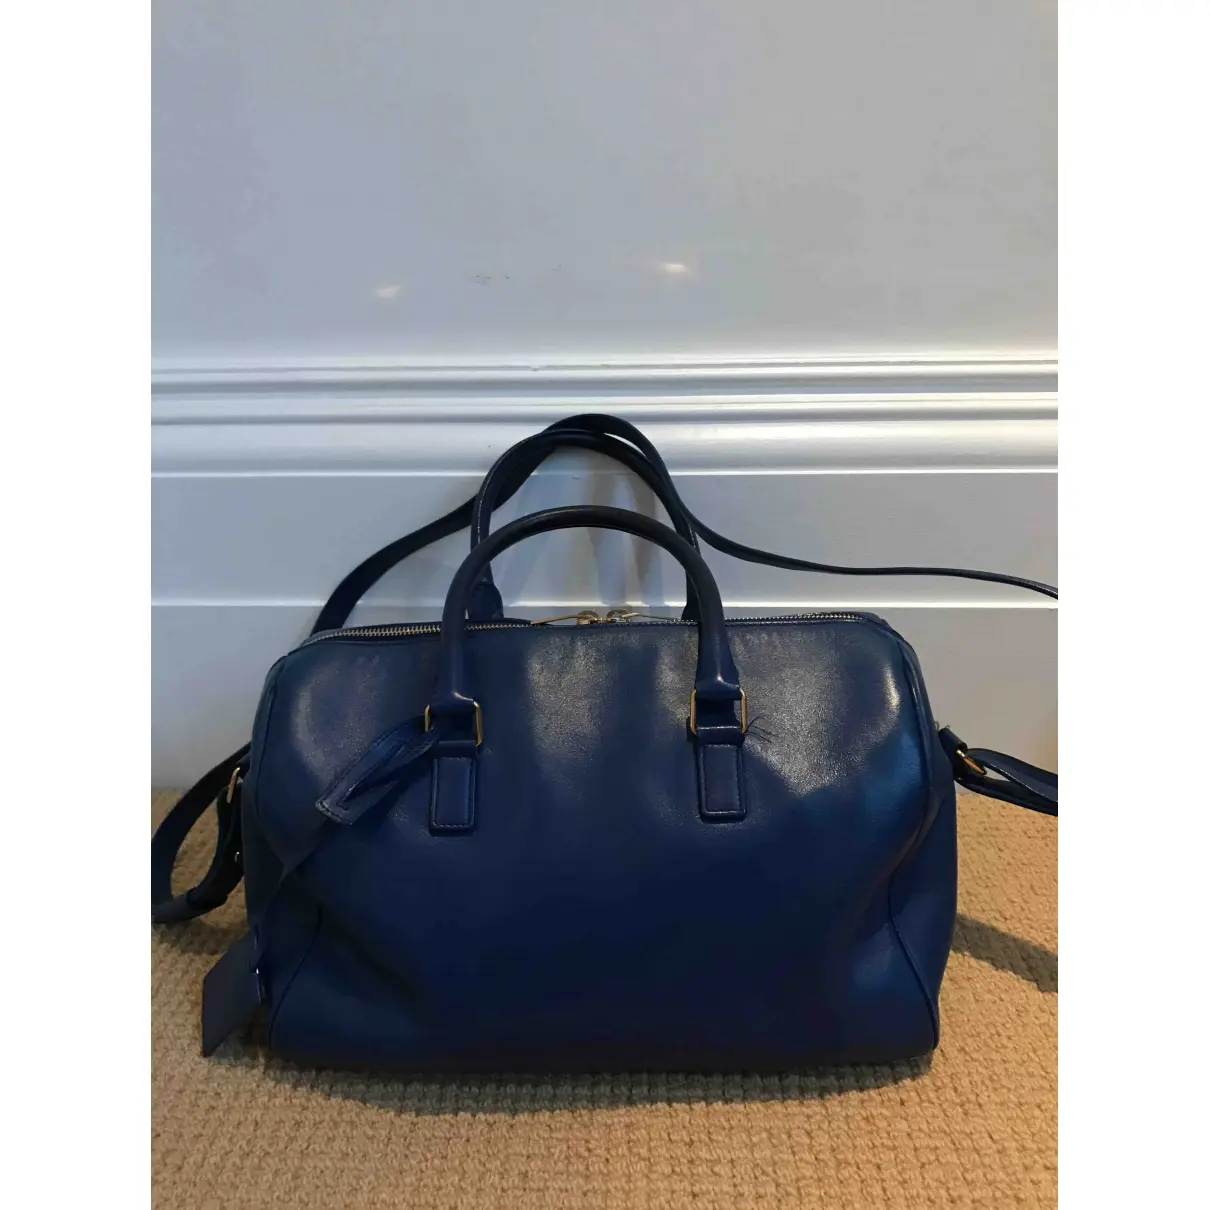 Saint Laurent Duffle leather handbag for sale